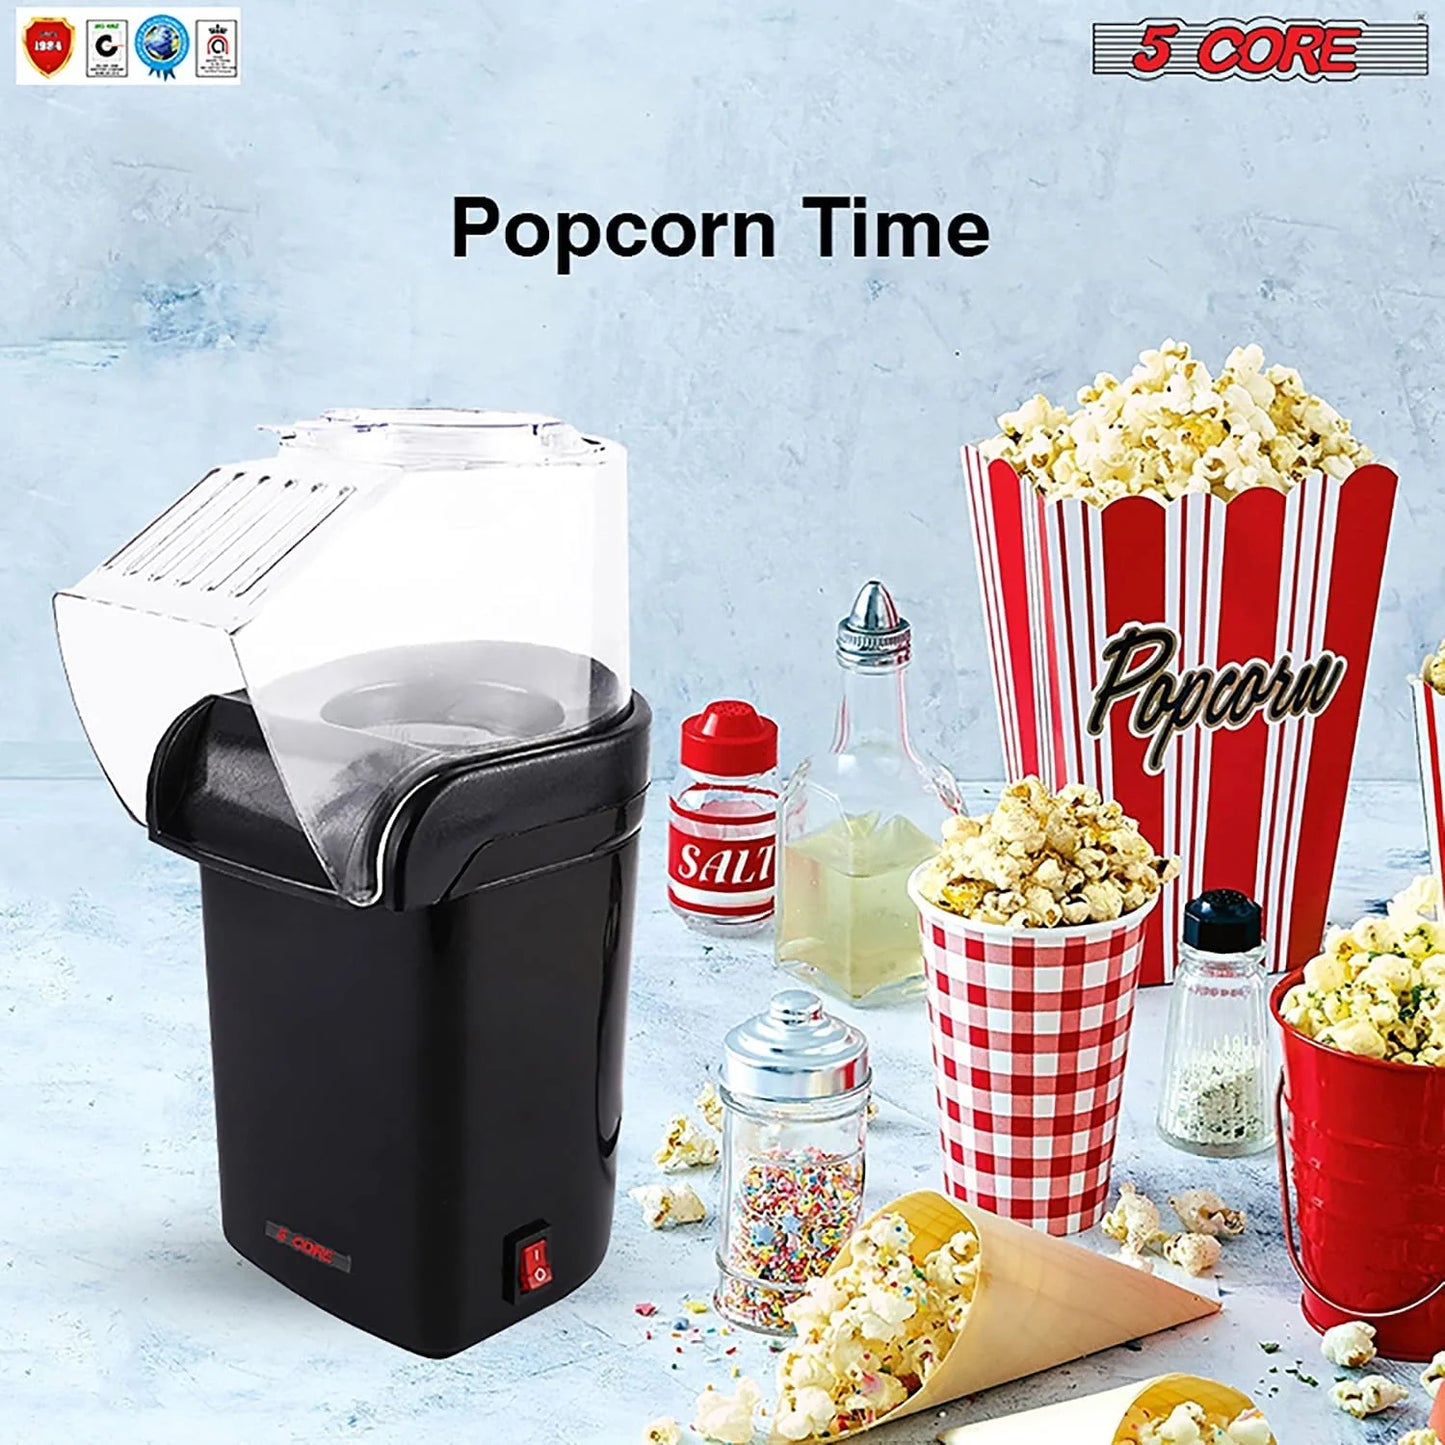 5 Core Popcorn Machine Black Capacity 16 Cups Hot Air Popcorn Popper Maker Compact Mini Pop Corn Machine - POP B